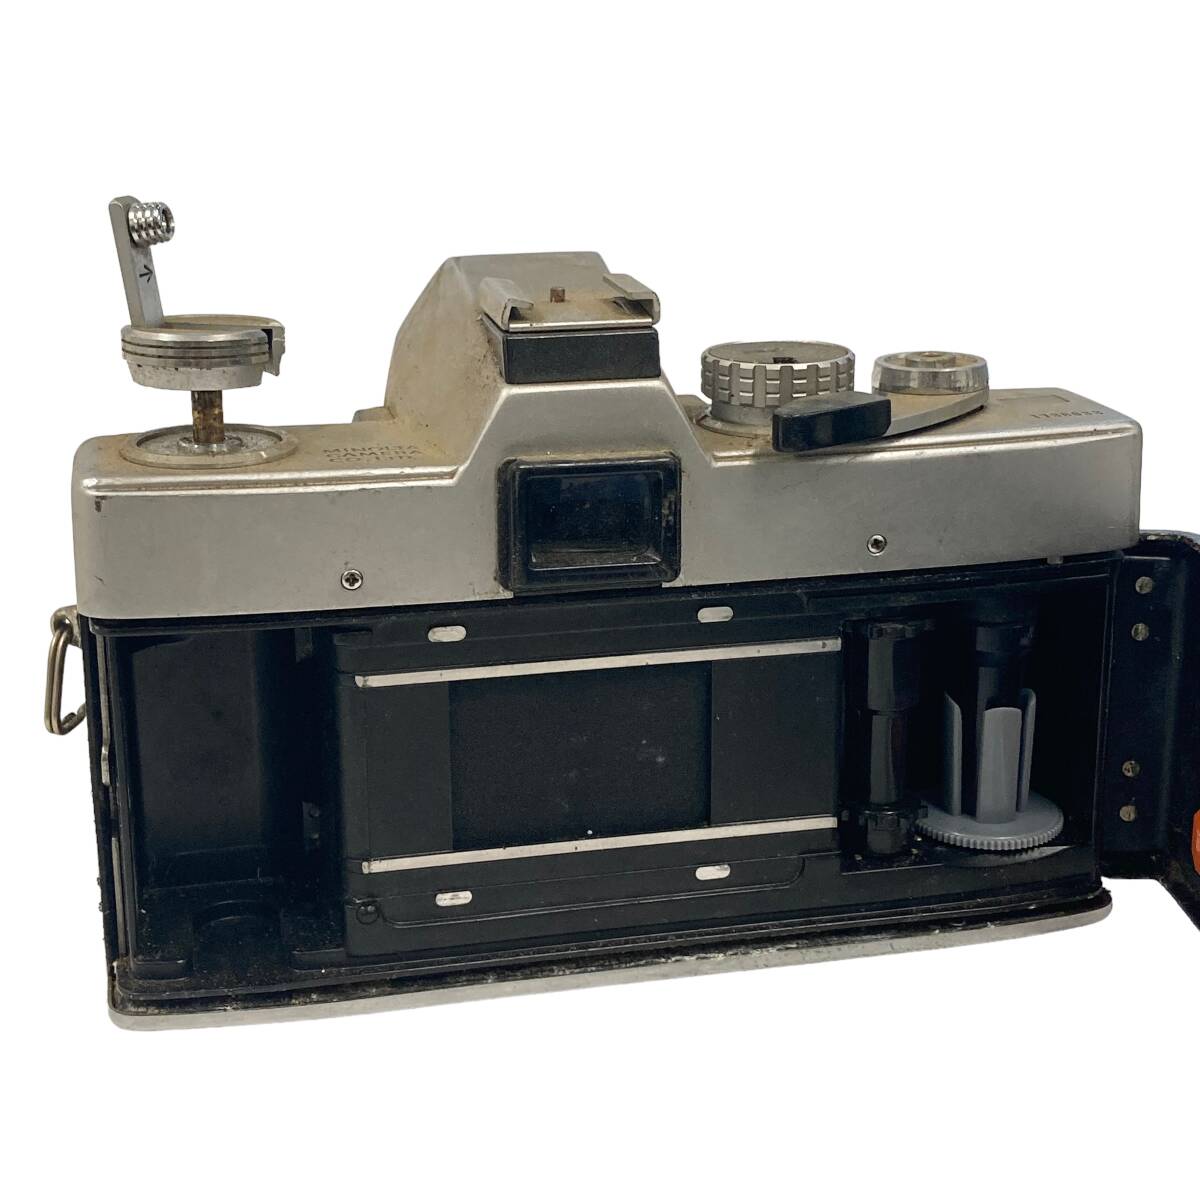 Minolta ミノルタ SRT101 一眼レフフィルムカメラ MC ROKKOR-PF 1:1.7 f=55㎜ カメラ SR-1 1:2 55mm 2台セットの画像6